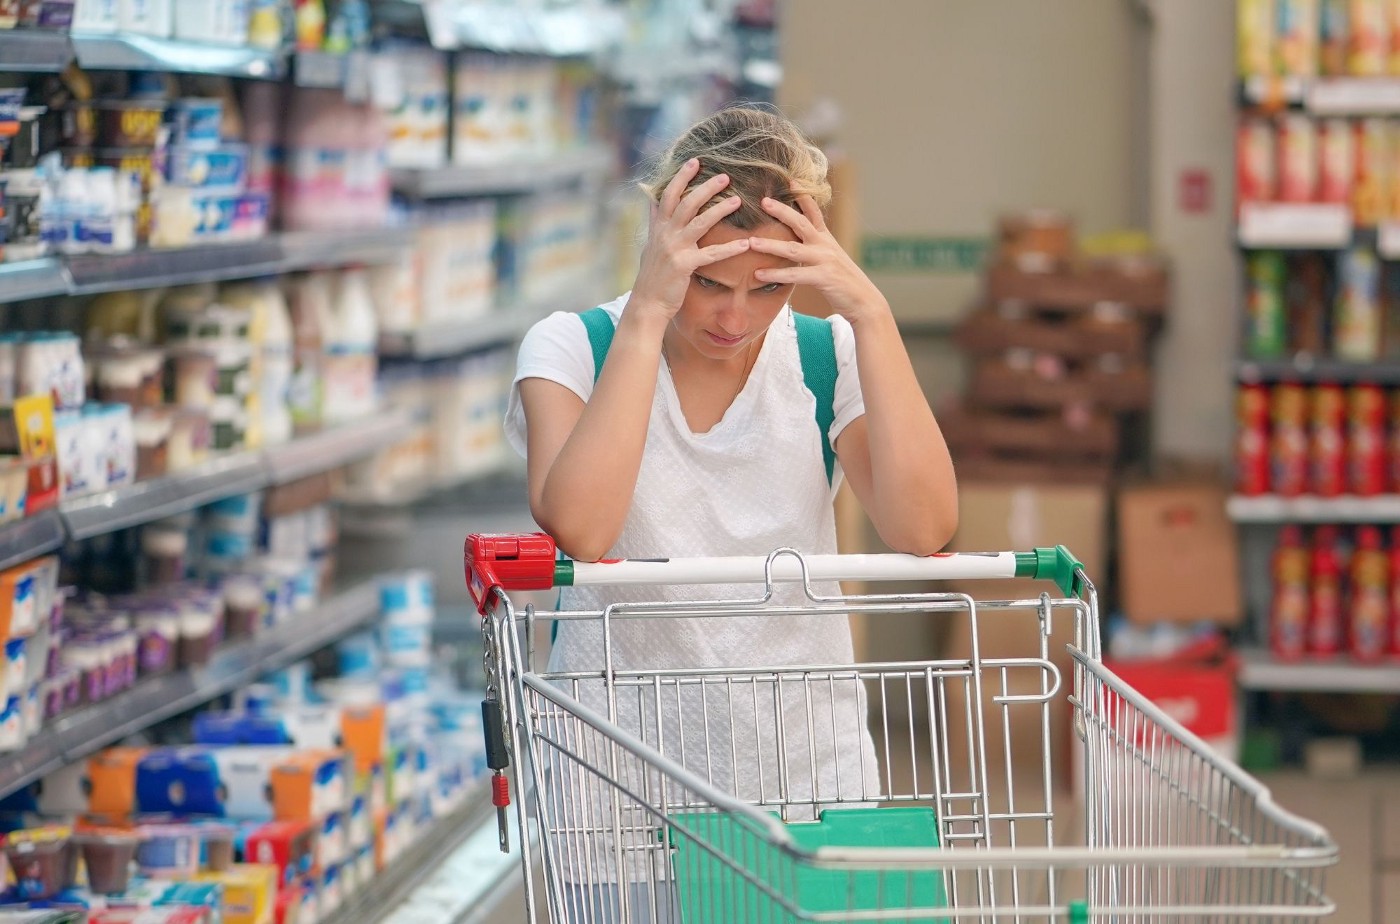 Hội chứng siêu thị (supermarket syndrome): chóng mặt nhức đầu khi đi siêu thị